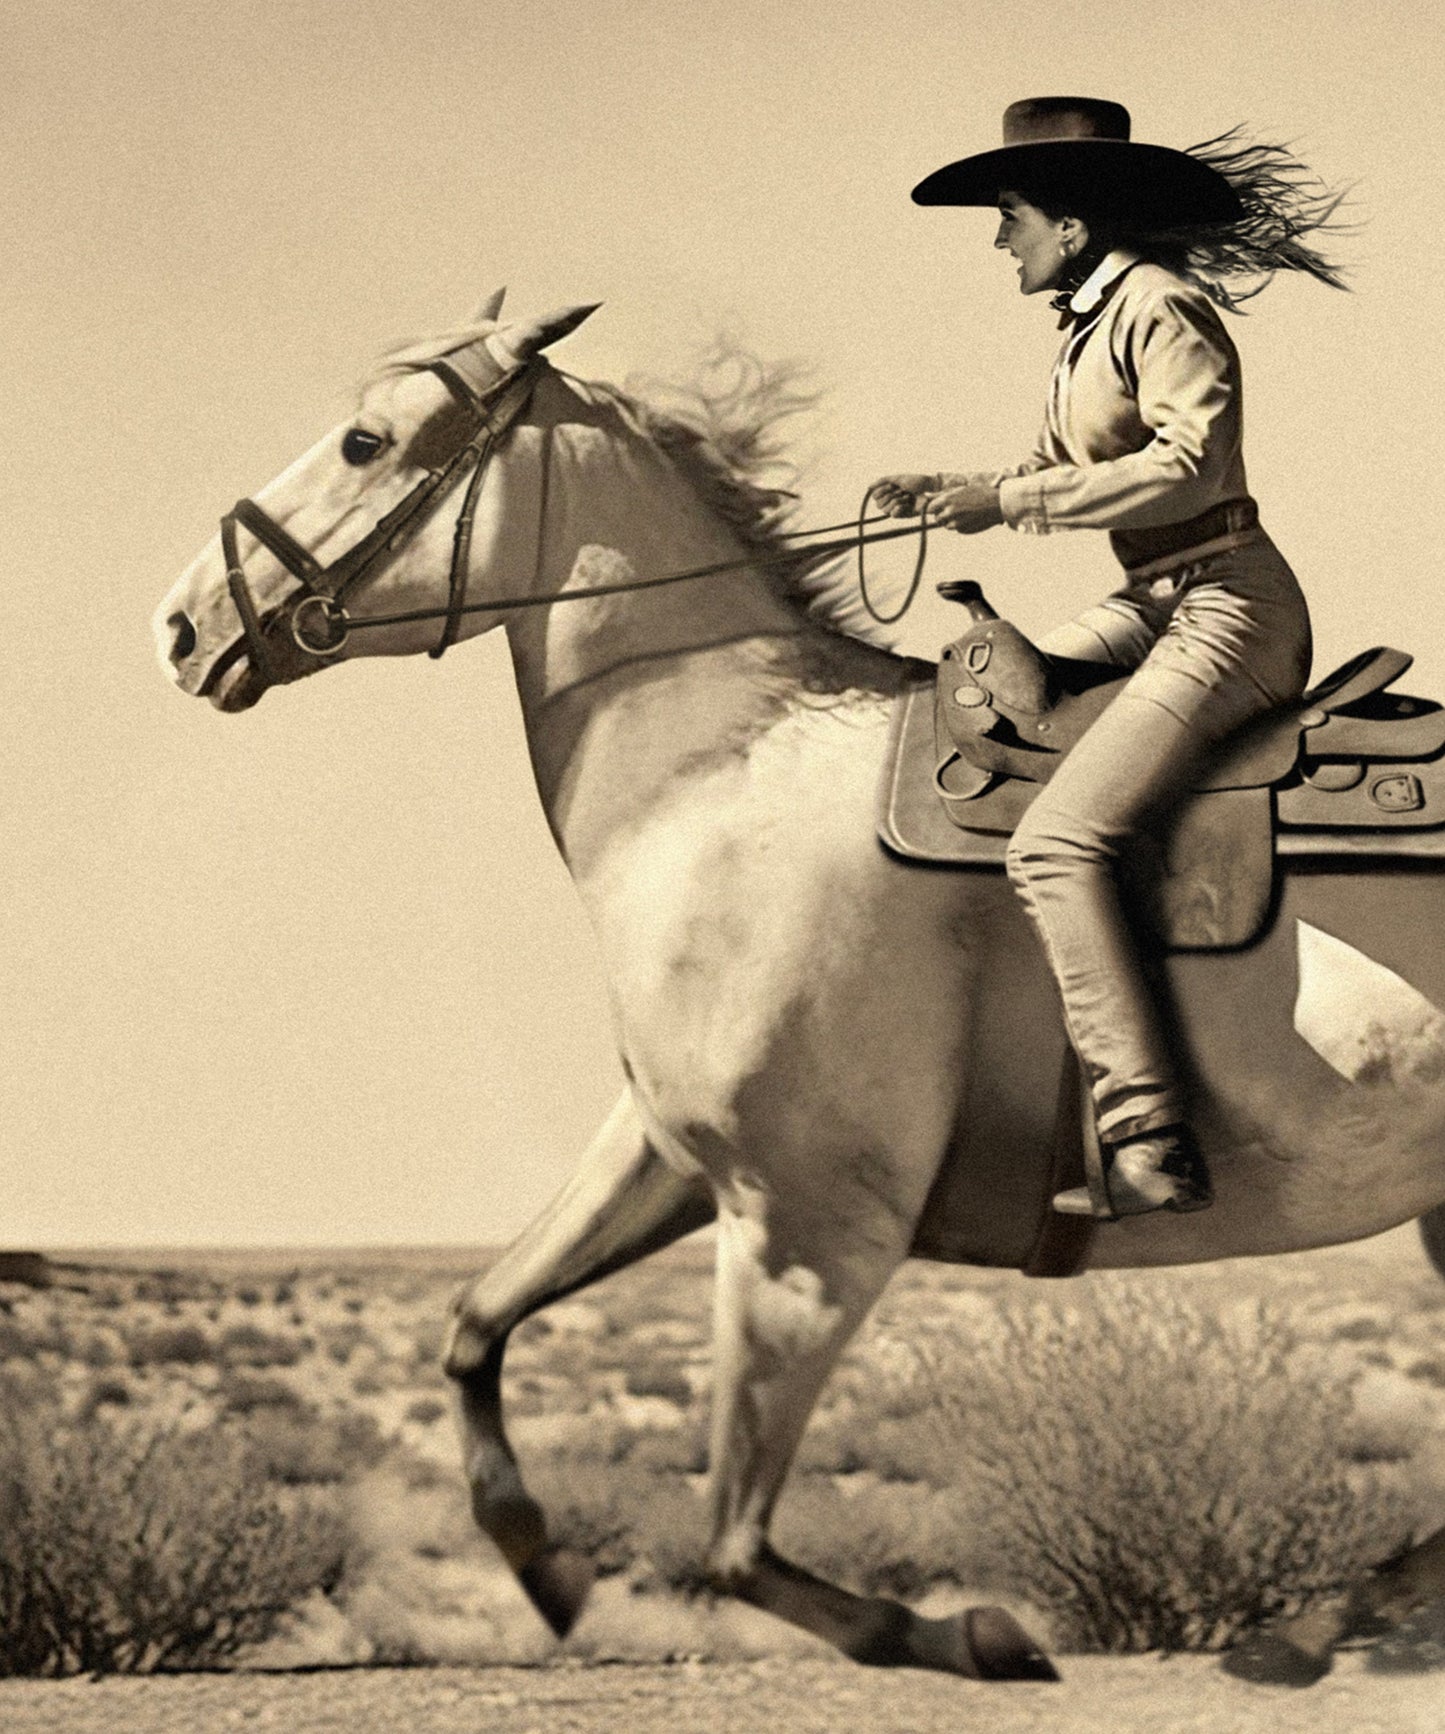 Cowgirl Film Still